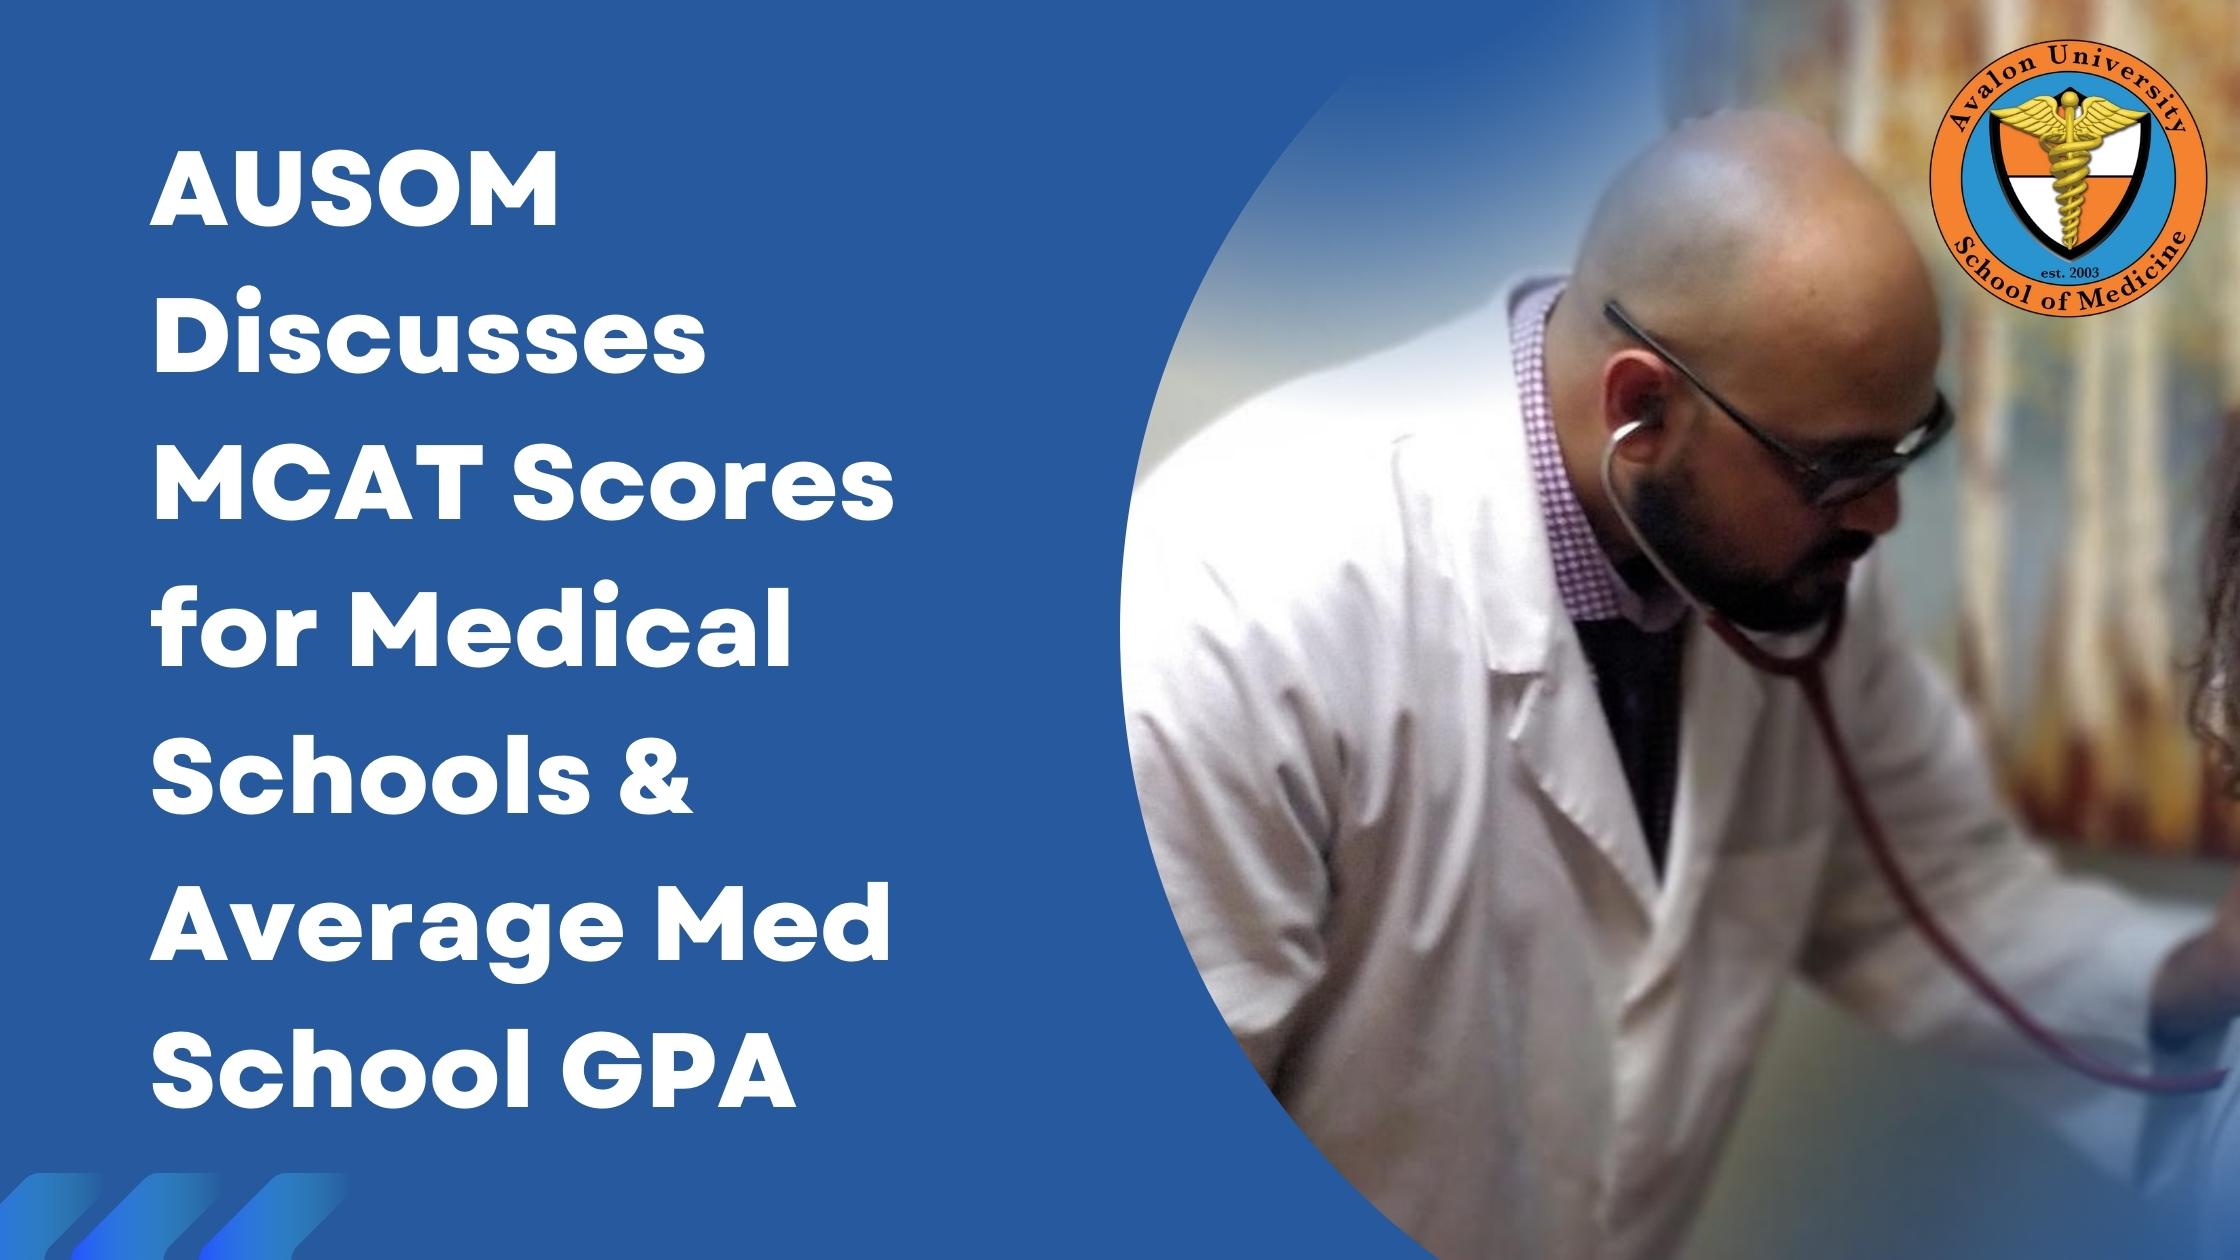 Average Med School GPA